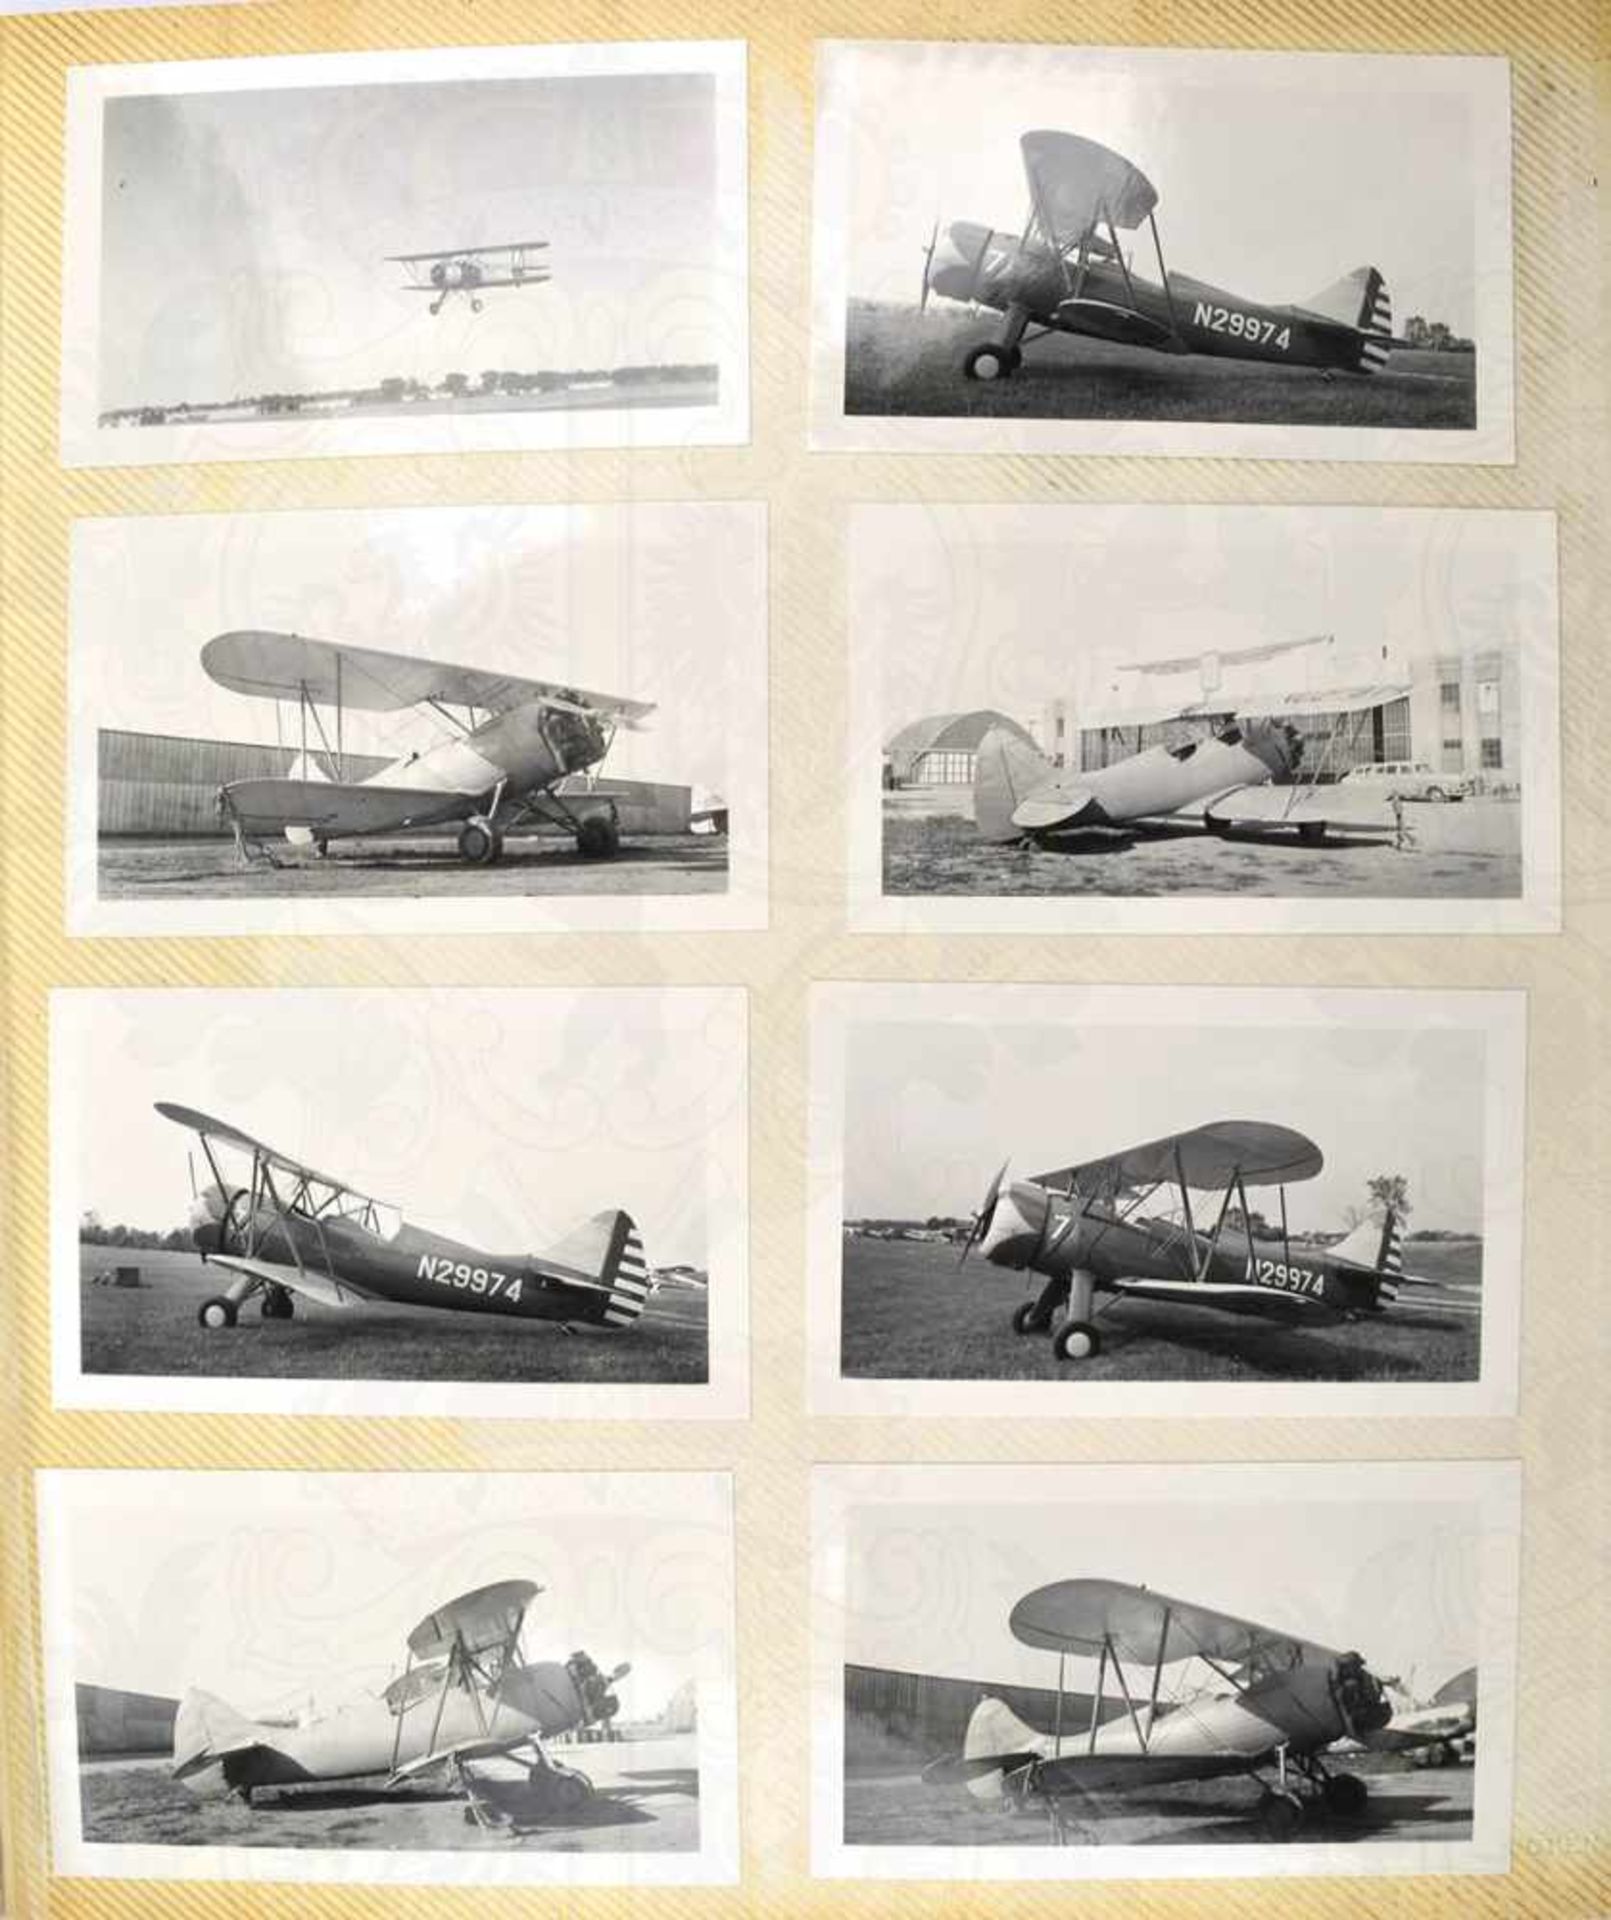 2 FOTOALBEN, mit 320 Fotos v. Aufklärungs-, Trainings-, Sport- und Charterflugzeugen etc., meist - Bild 5 aus 5